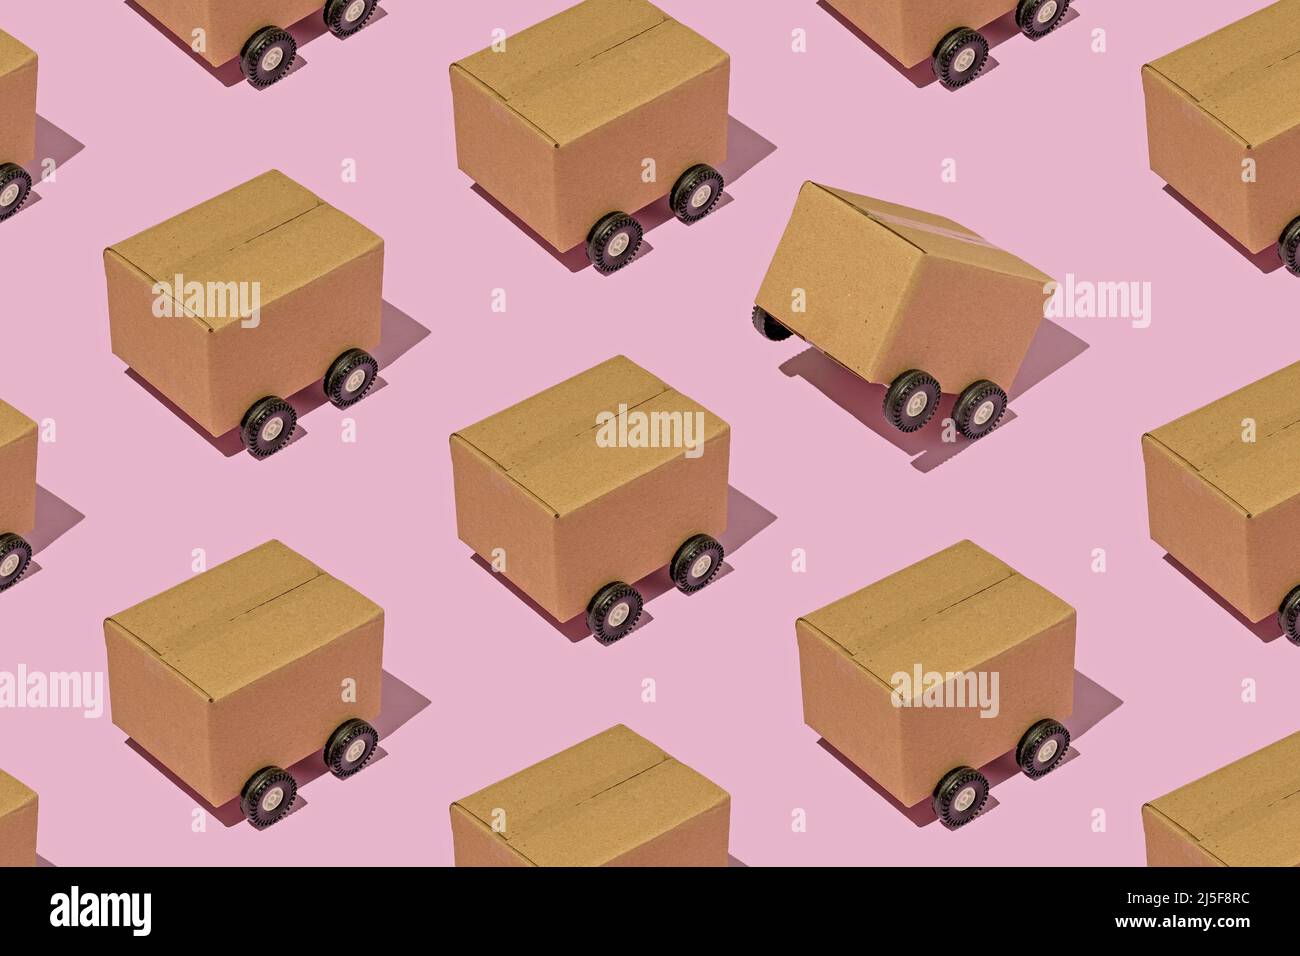 Modello isometrico con scatole di cartone su ruote, in quanto i camion trasportano pacchi e effettuano consegne. Traffico logistica container. Foto Stock